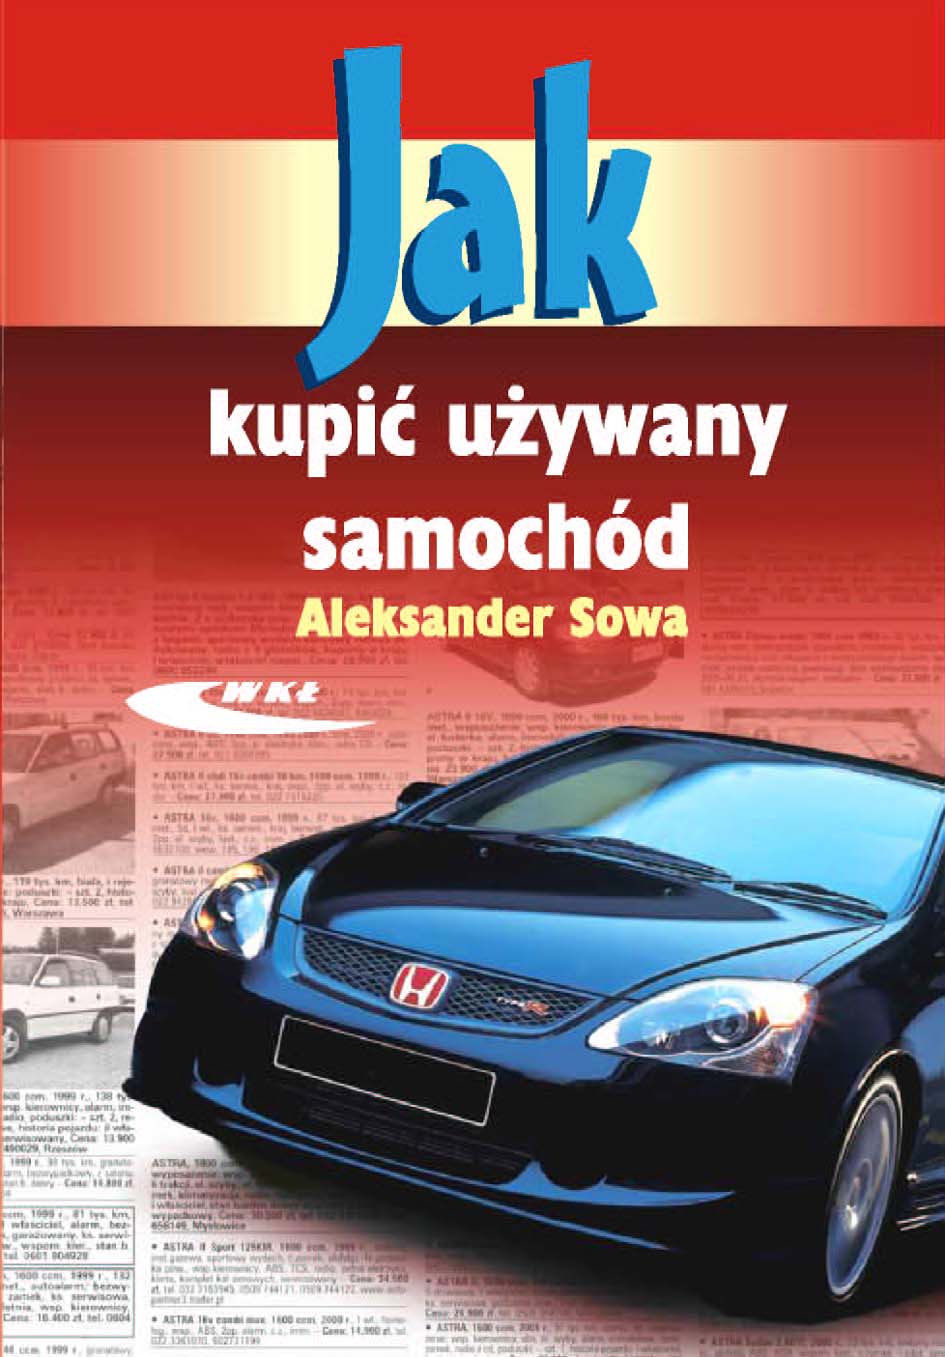 JAK kupić używany samochód Autodata Polska ksiegarnia